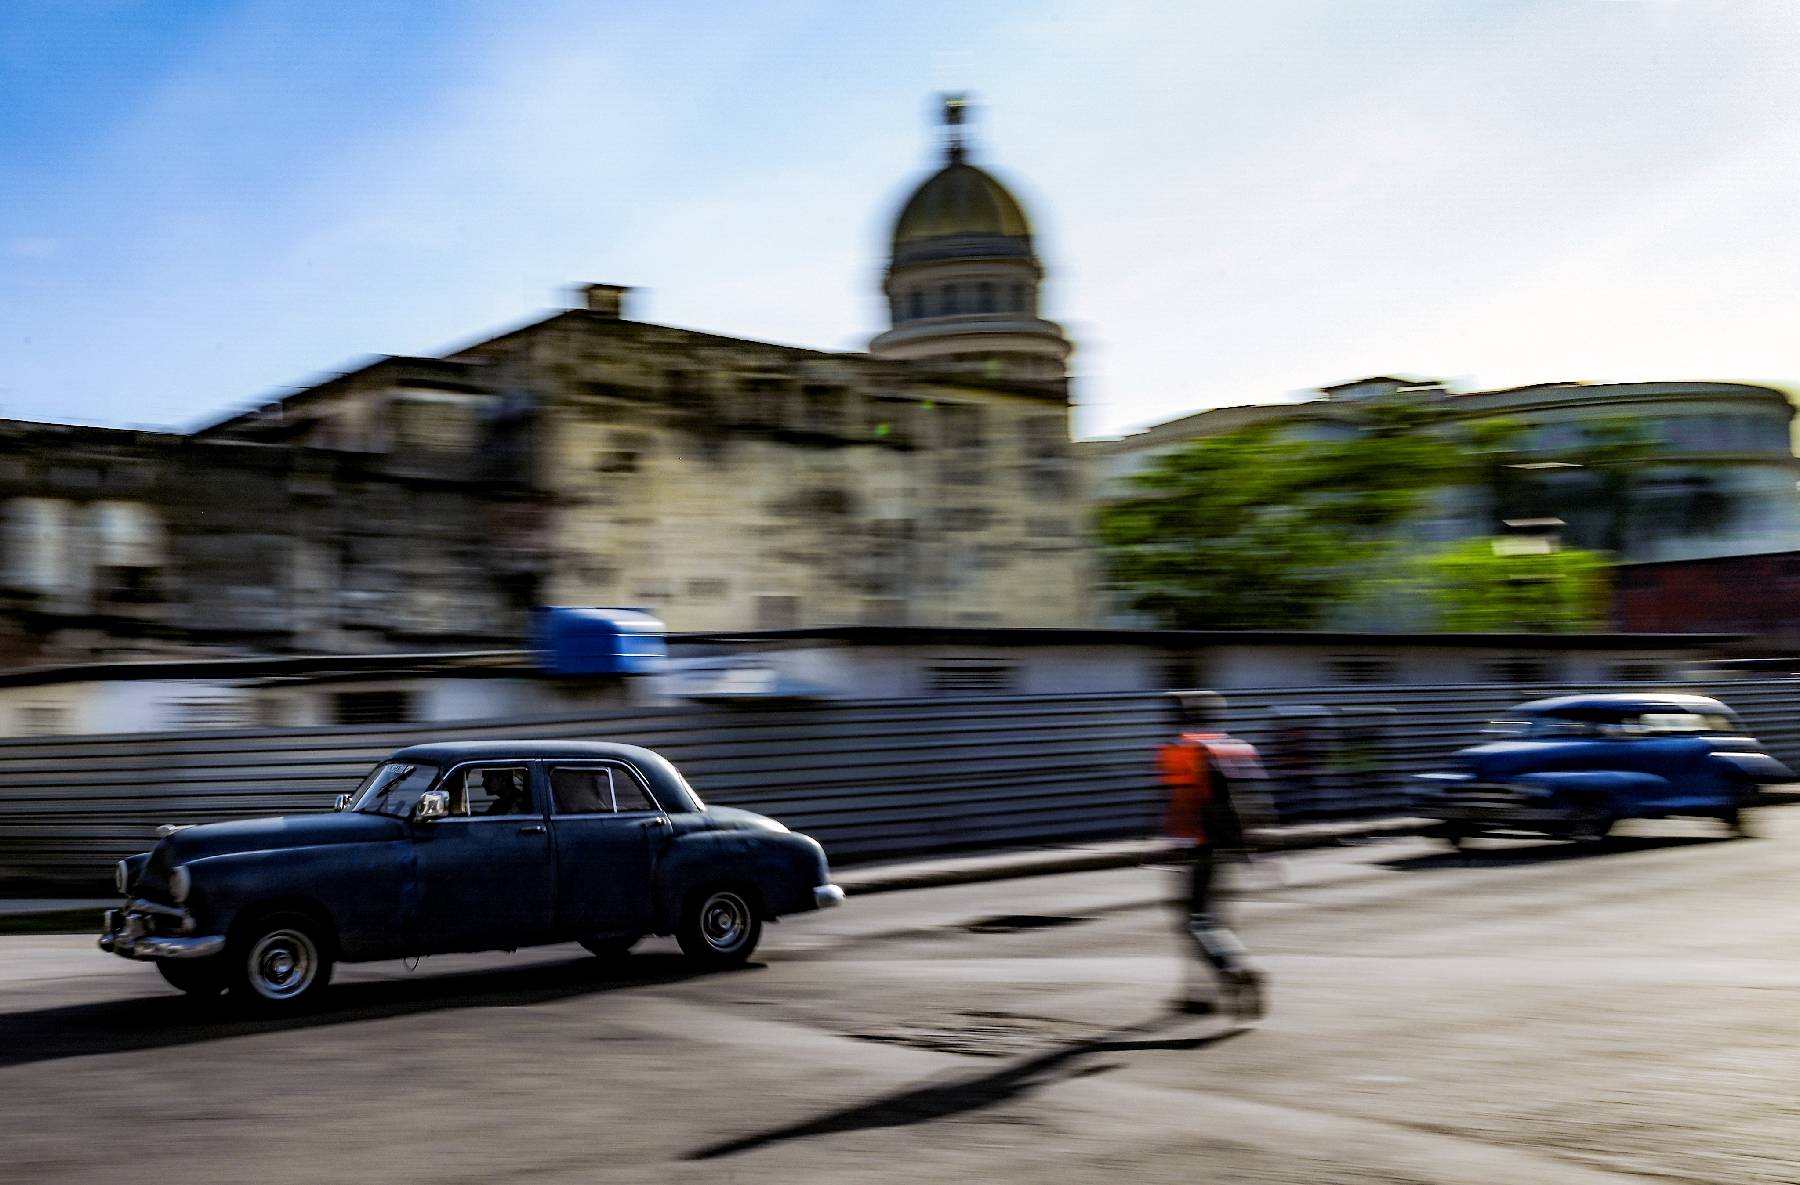 Washington n'est pas près de retirer Cuba de sa liste noire, dit Blinken